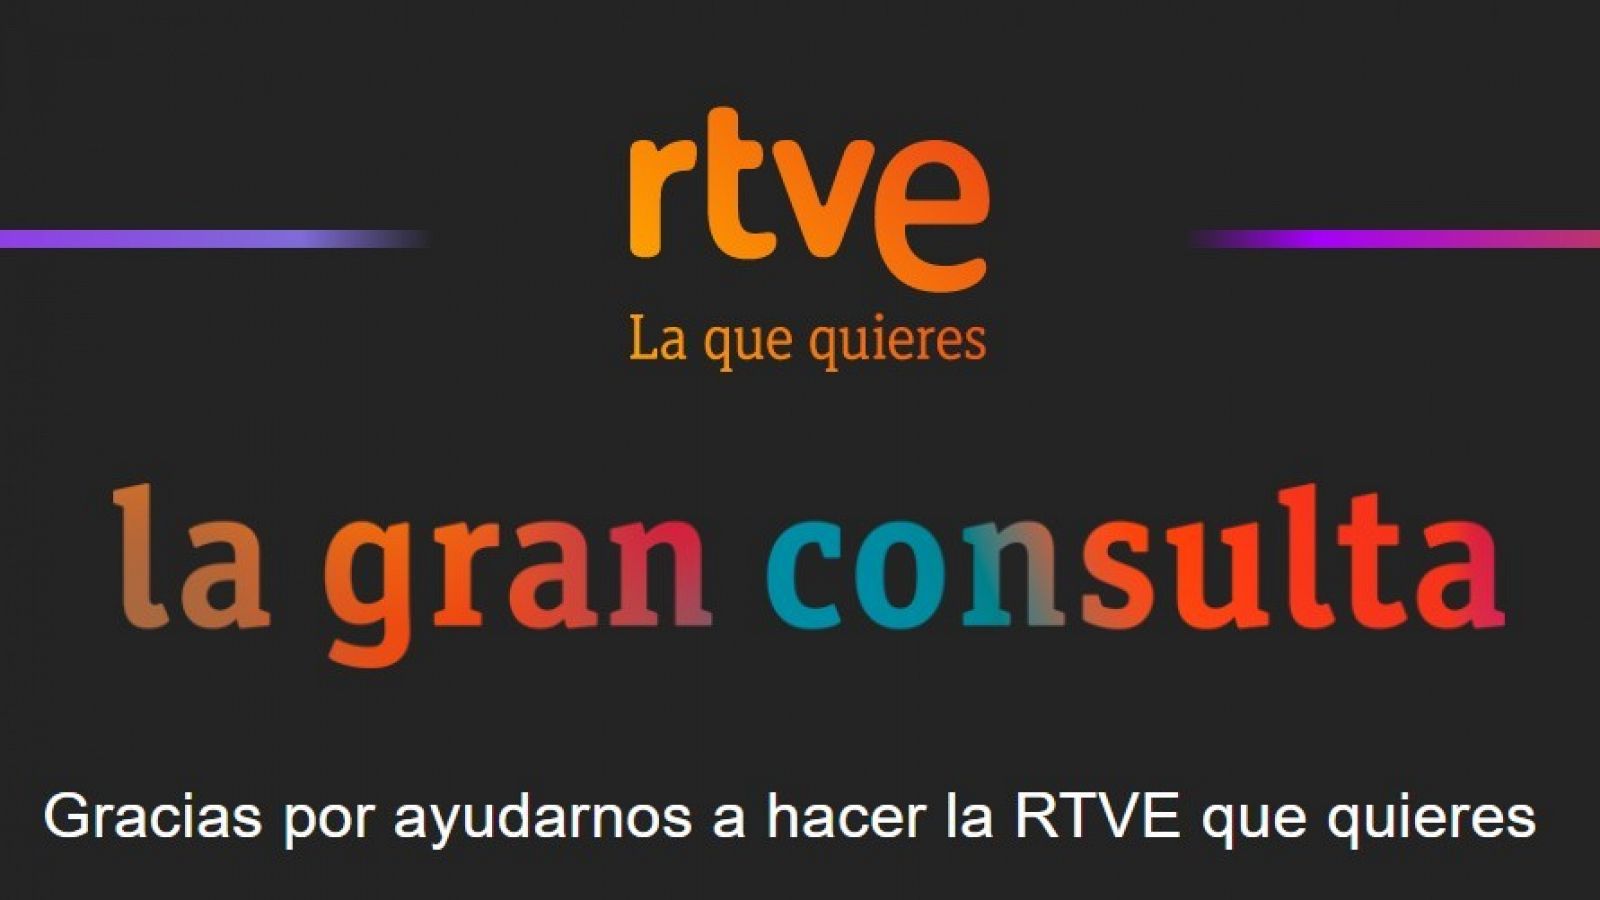 La gran consulta RTVE